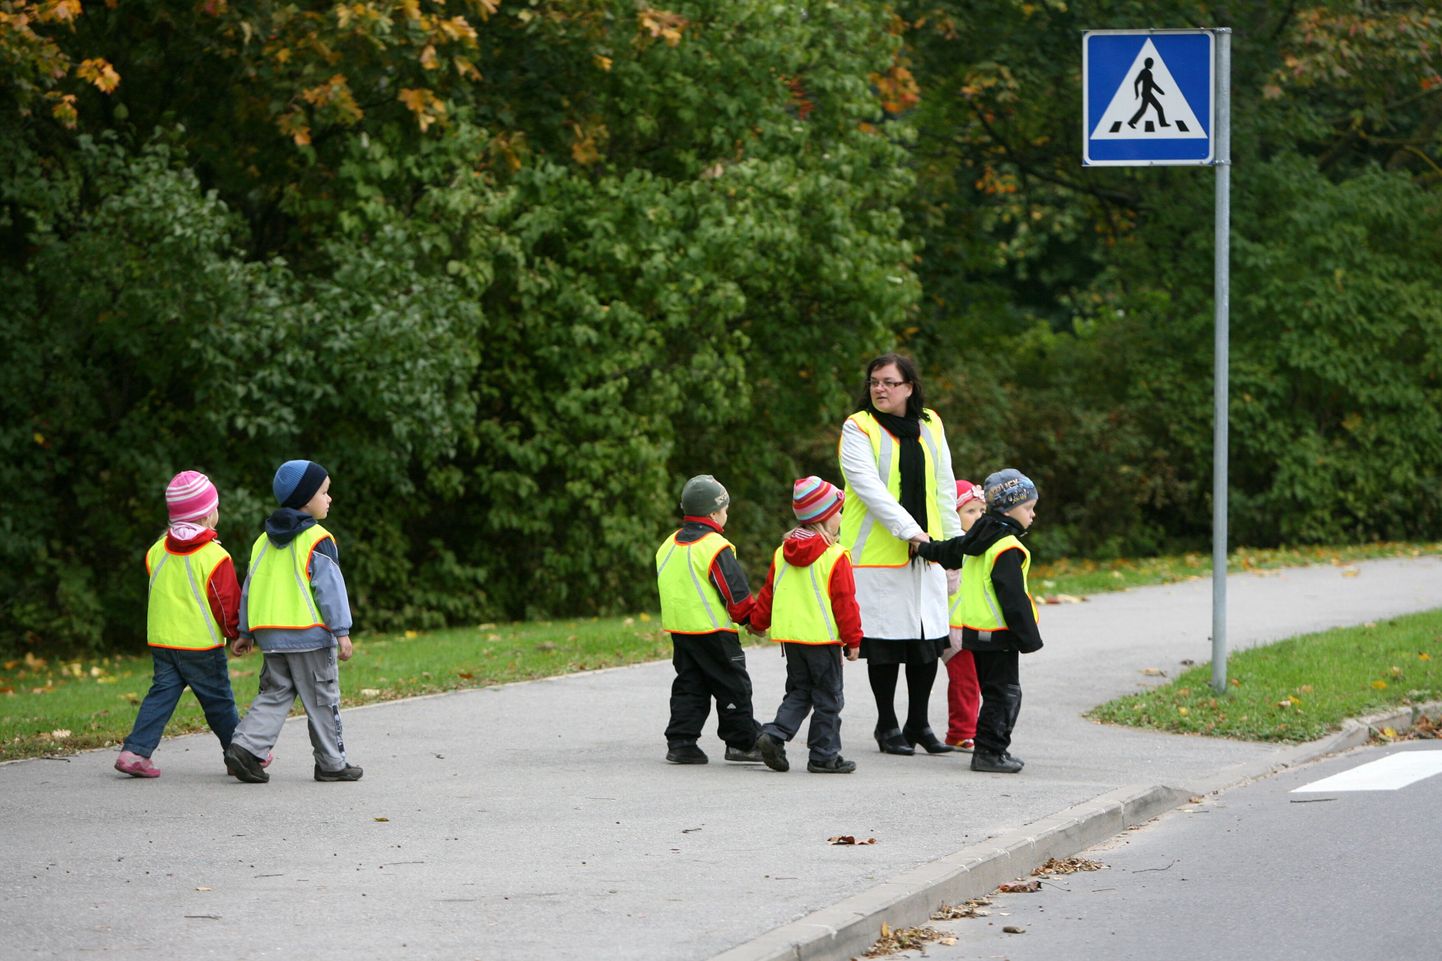 Lasteaednike liidu hinnangul võiksid lasteaiaõpetajad saada sama pika puhkuse kui kooliõpetajad. Fotol on Tartu Veeriku lasteaia lapsed teed ületamas.